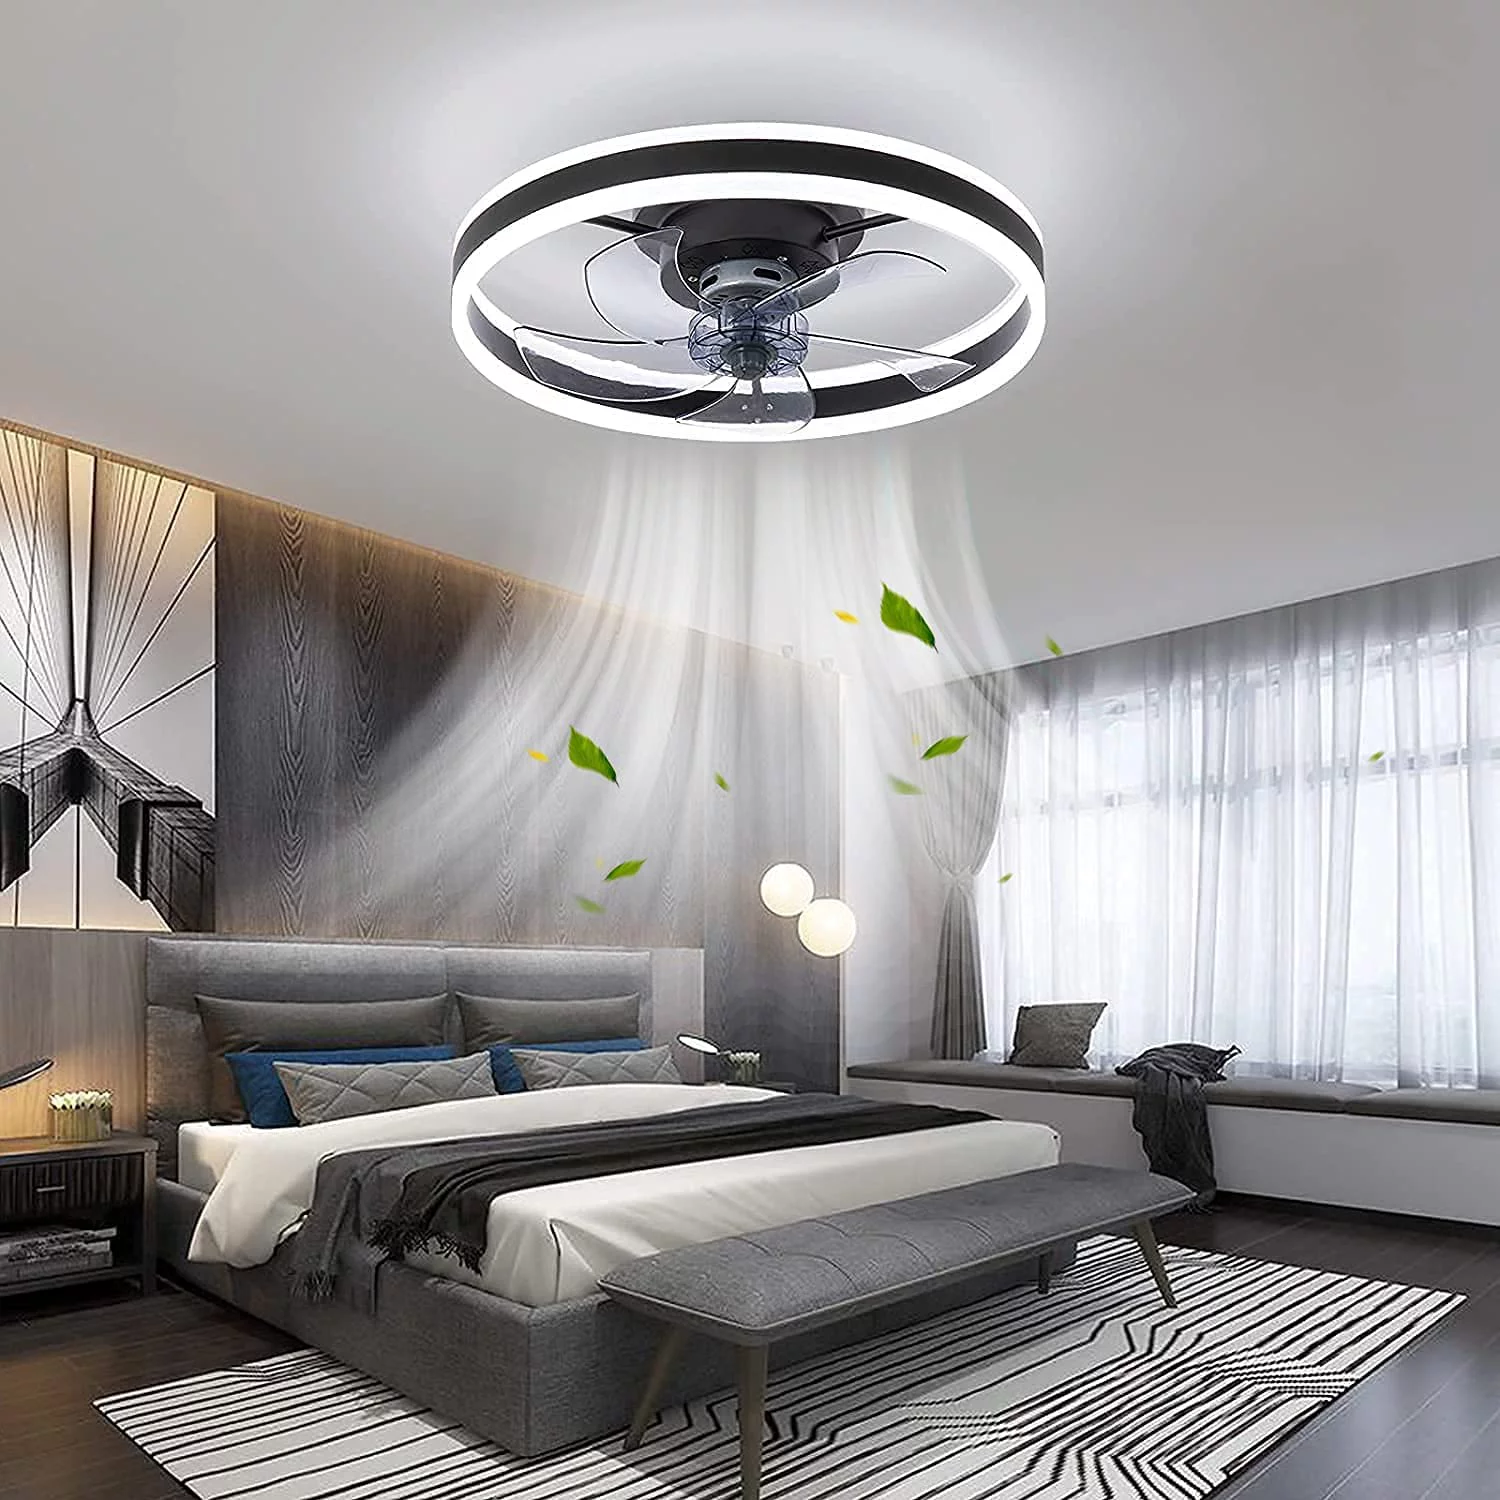 15 Best Ceiling Fan Lights for 2023